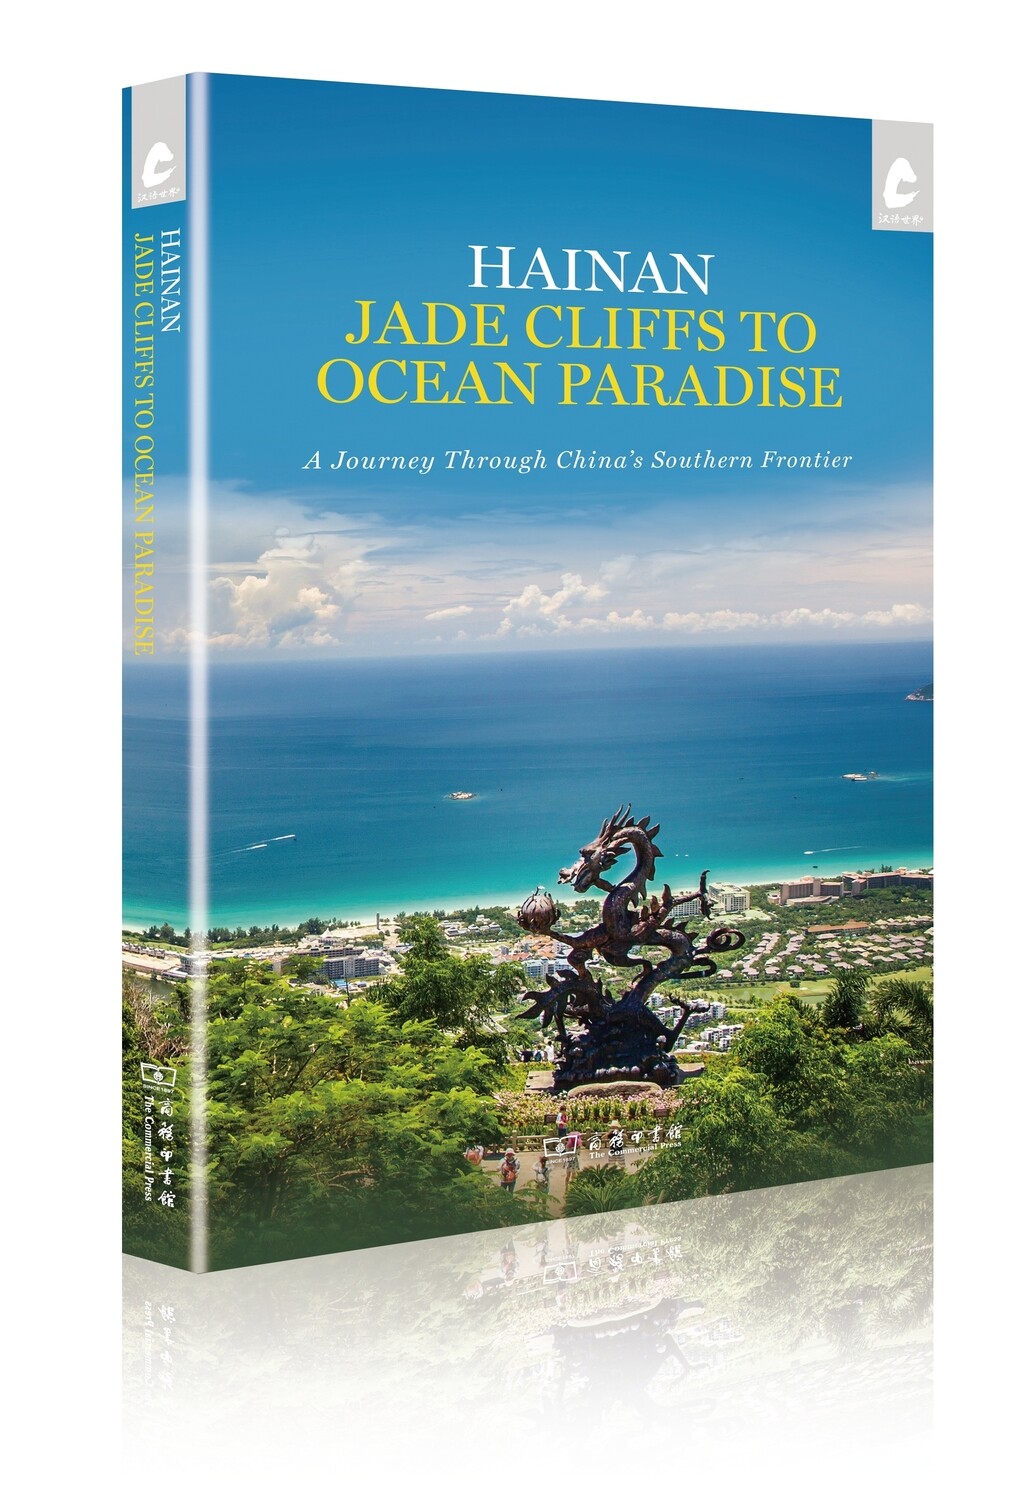 Hainan: Jade Cliffs to Ocean Paradise